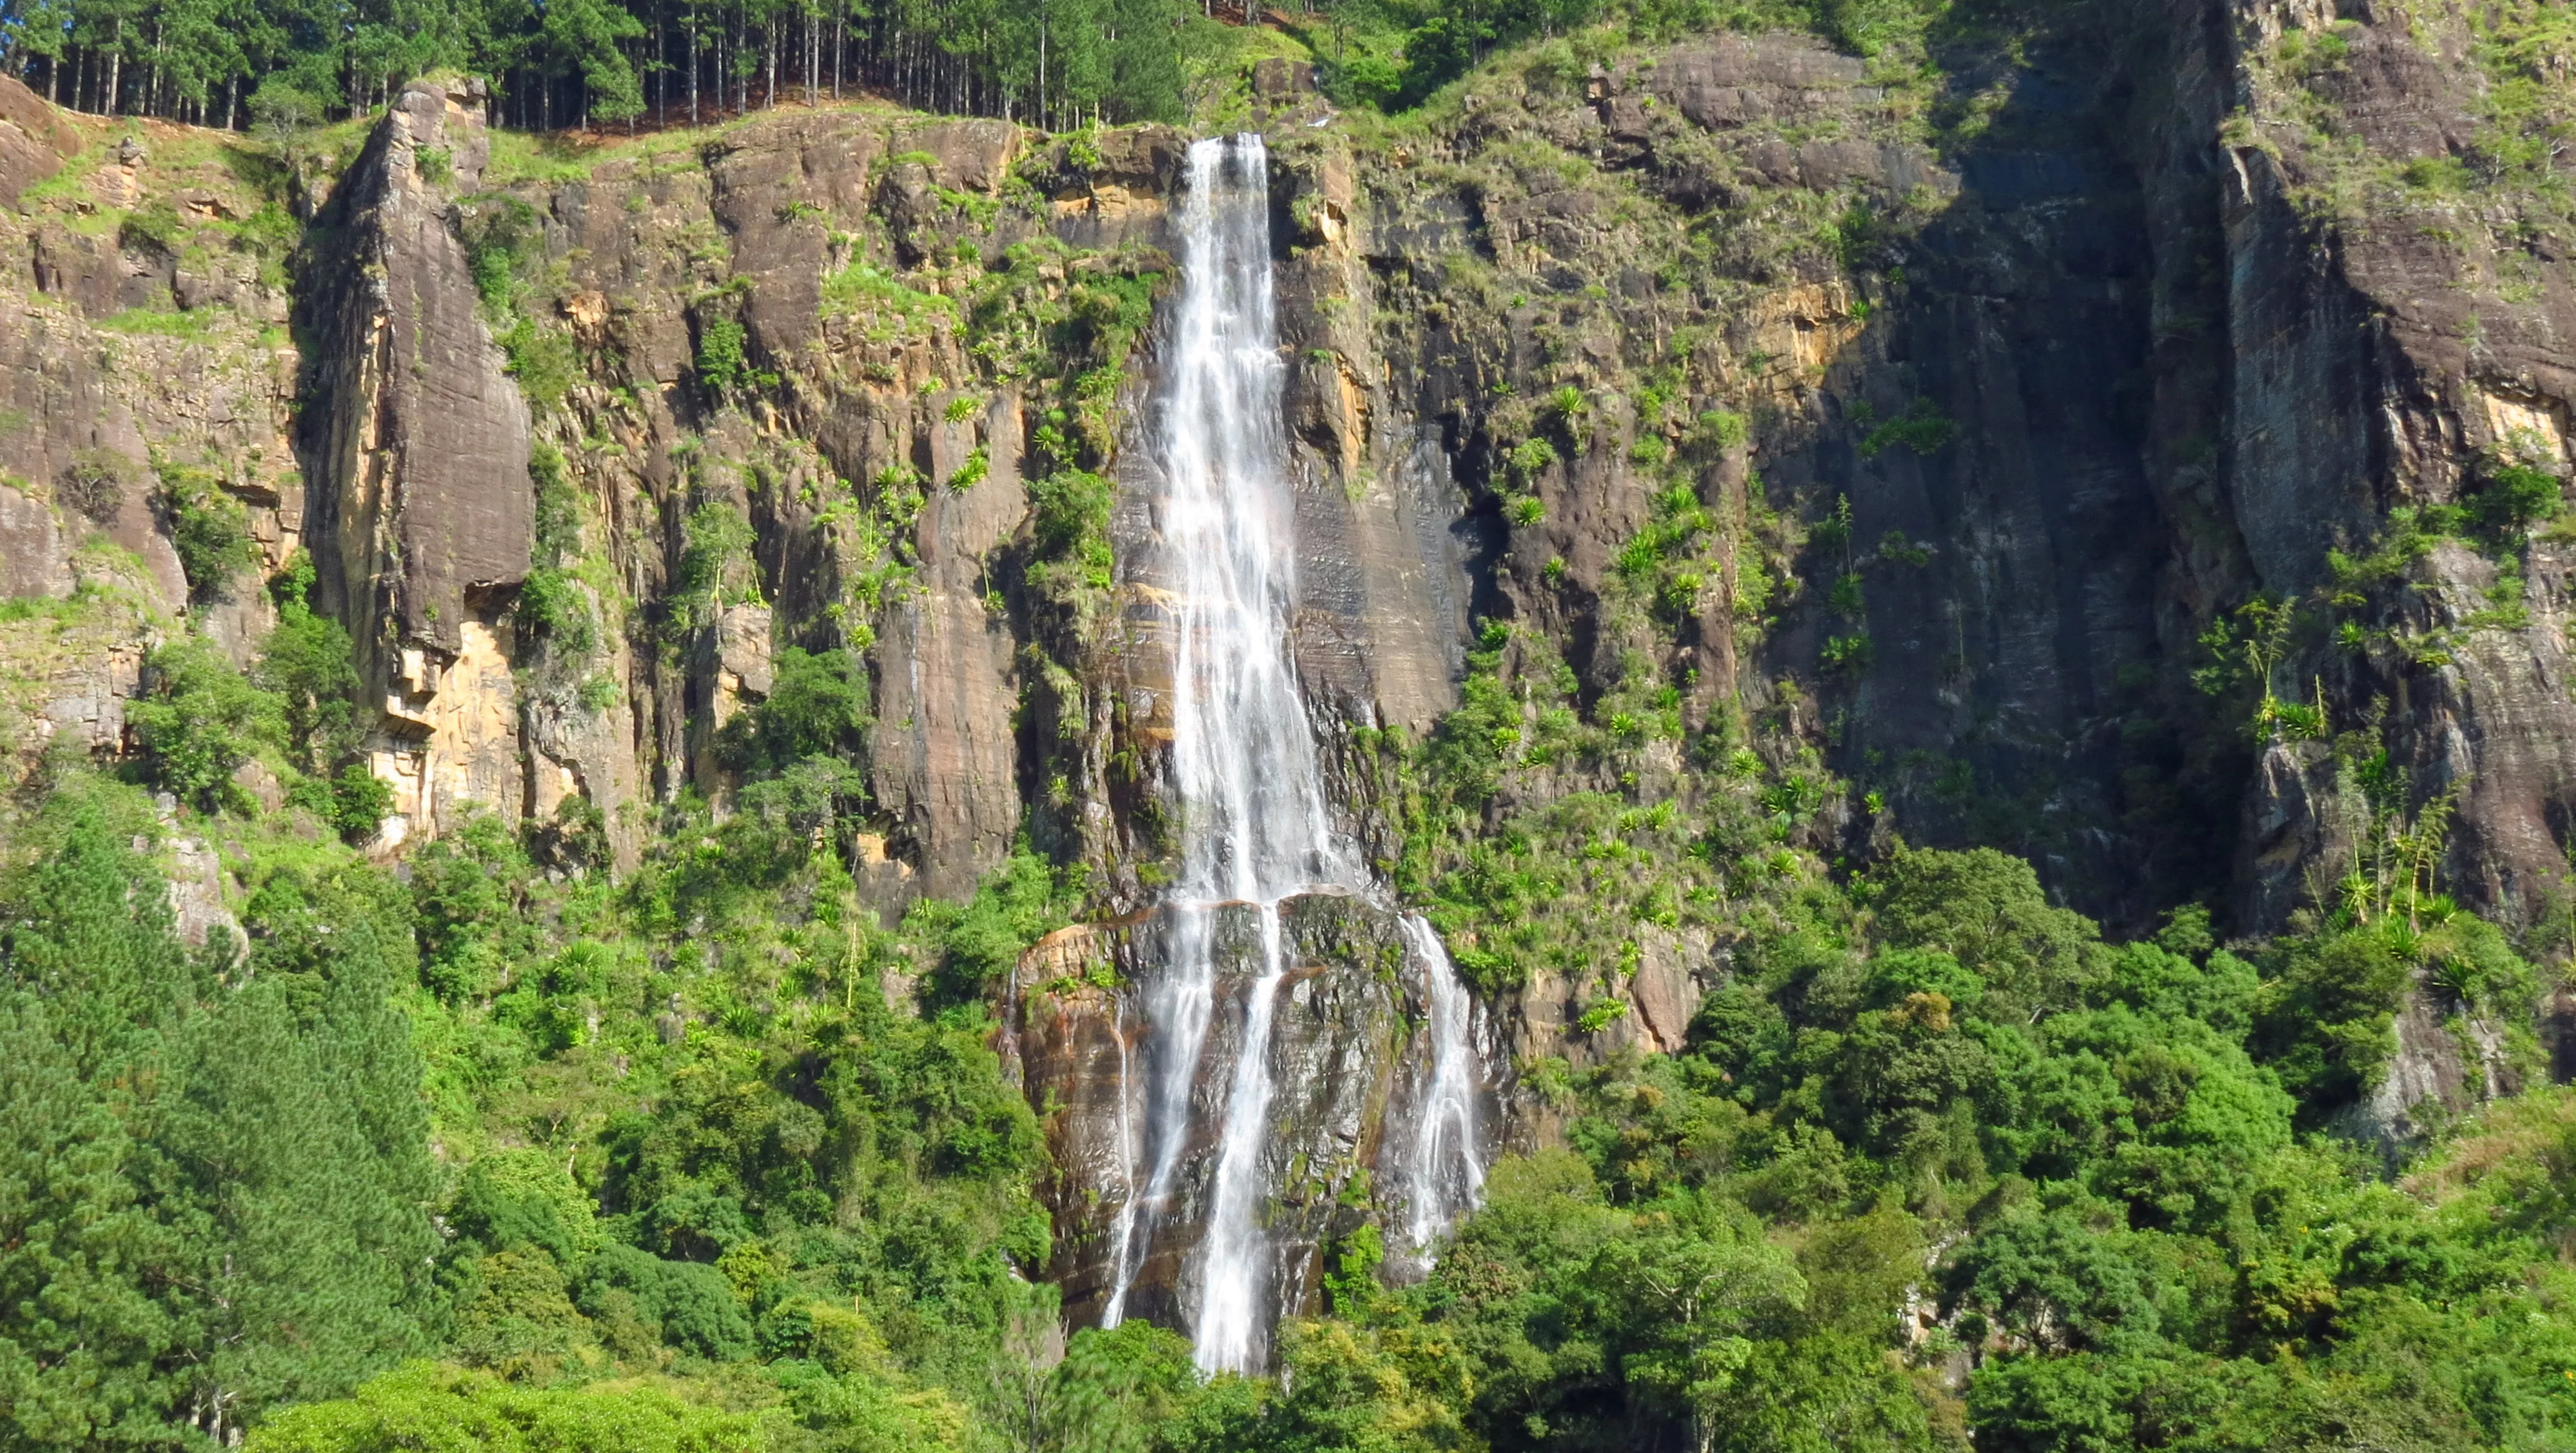 Bambarakanda Waterfall and Ohiya Trek in Sri Lanka, Central Asia | Waterfalls,Trekking & Hiking - Rated 3.9